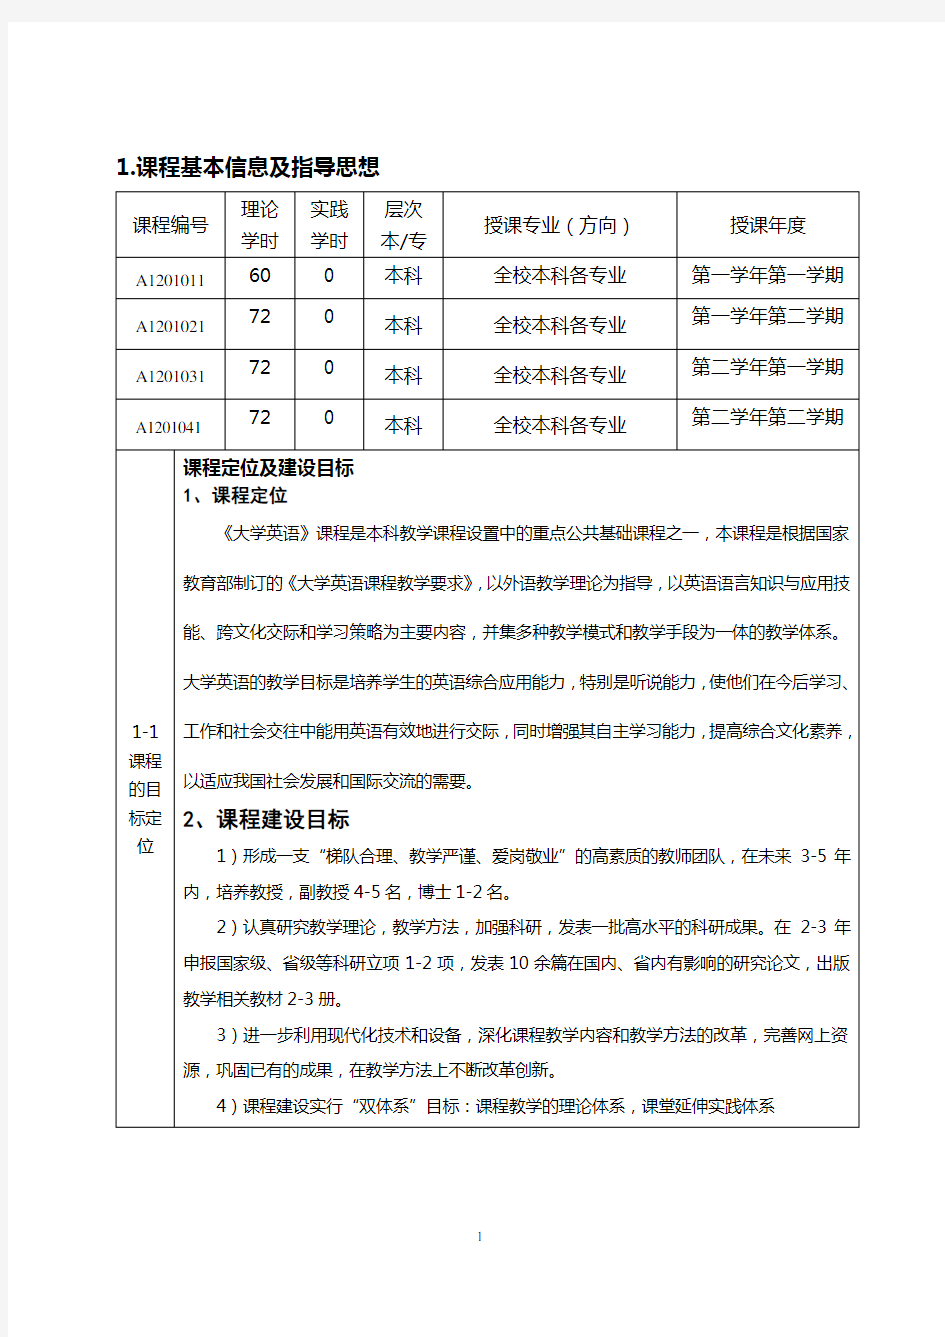 广 东 药 学 院 精品课程、优质课程申报书